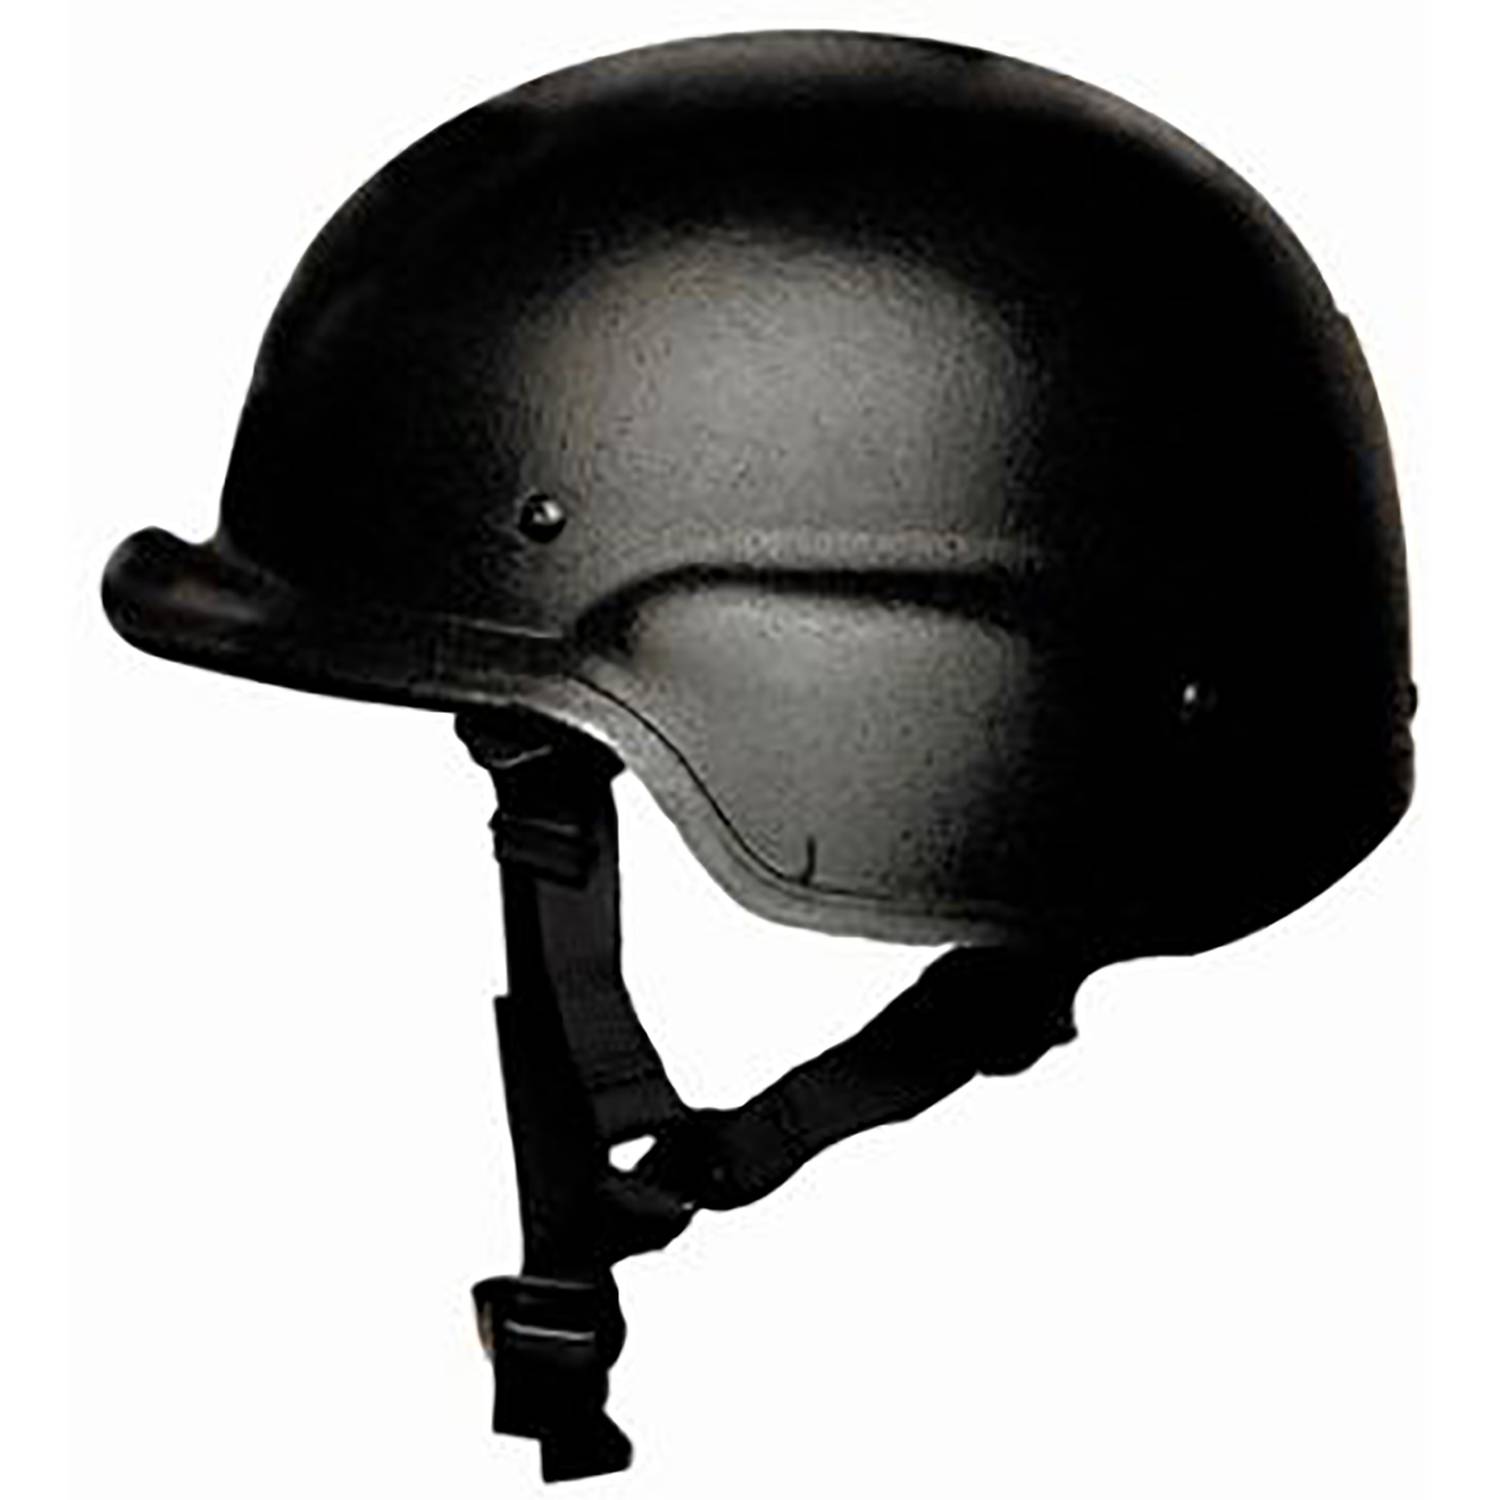 Protech Tactical Delta 4 Ballistic Helmet